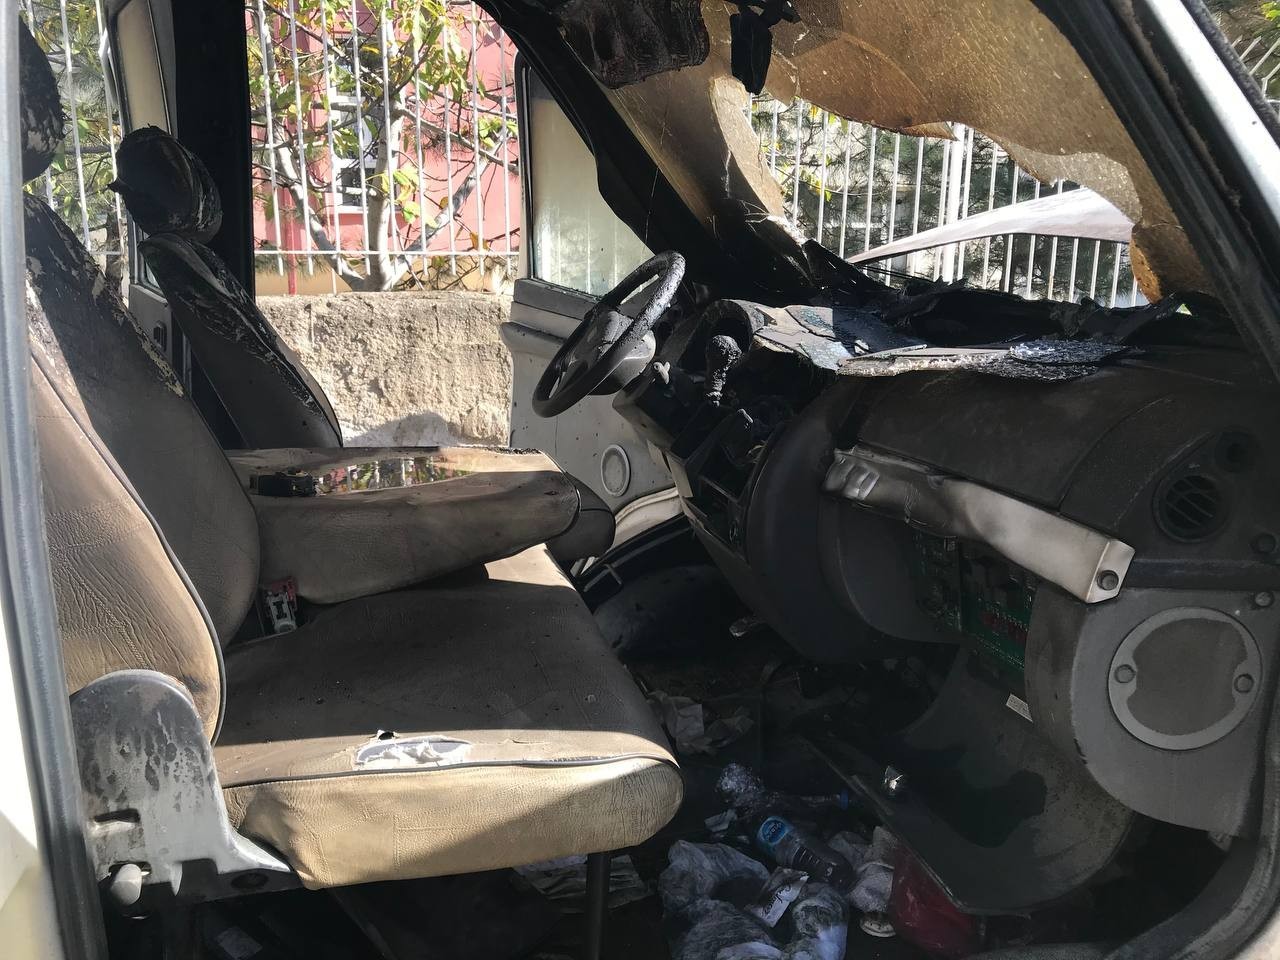 Edirne’de park halindeki kamyonet yandı #edirne